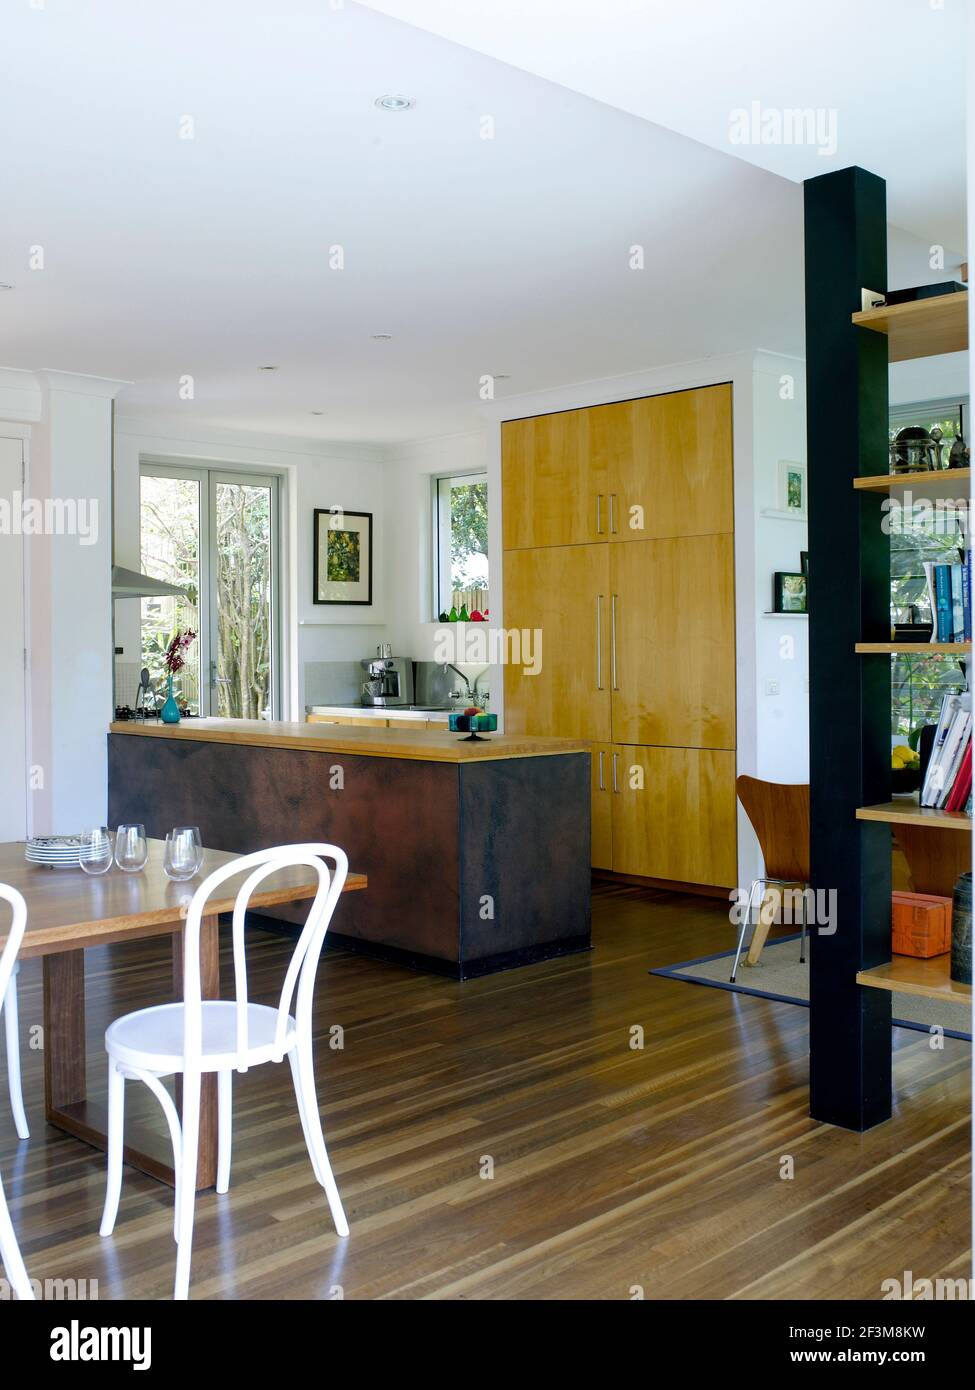 Cuisine américaine et salle à manger dans la maison familiale Castlecrag, Australie Banque D'Images